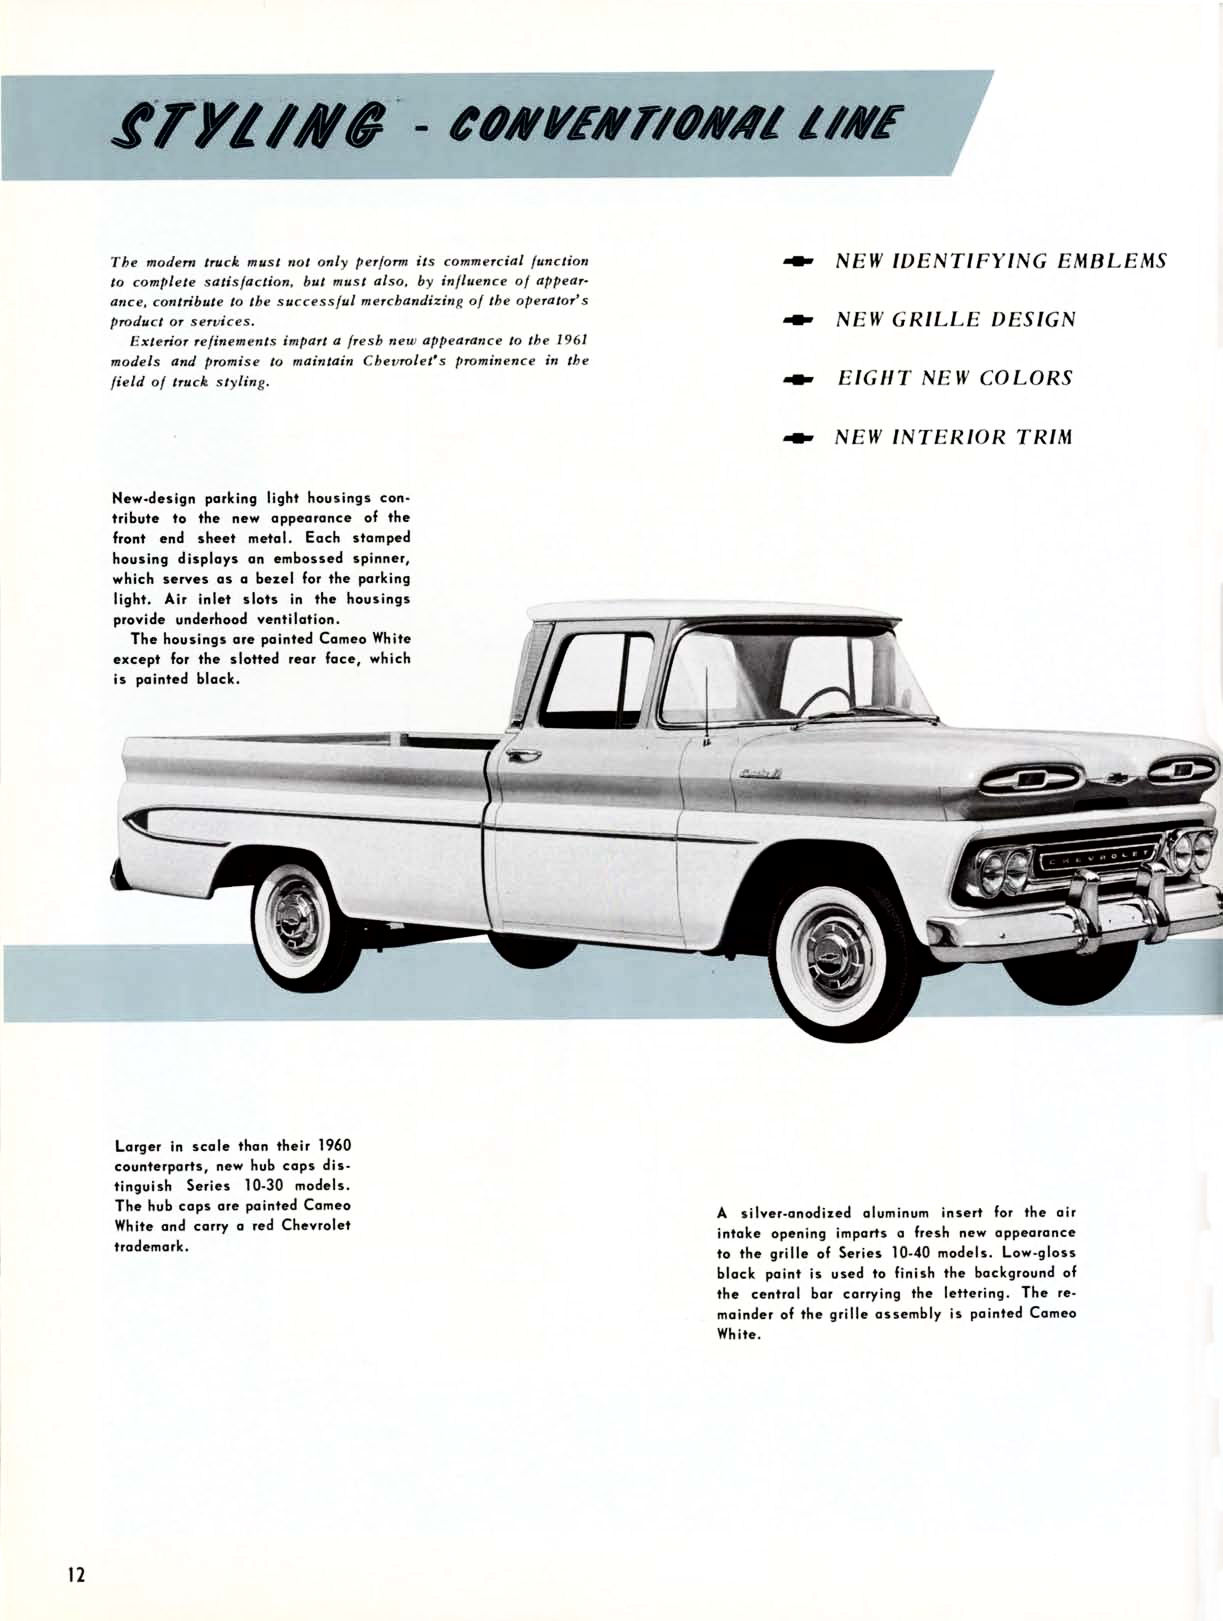 1961 Chevrolet Truck Engineering Features-12